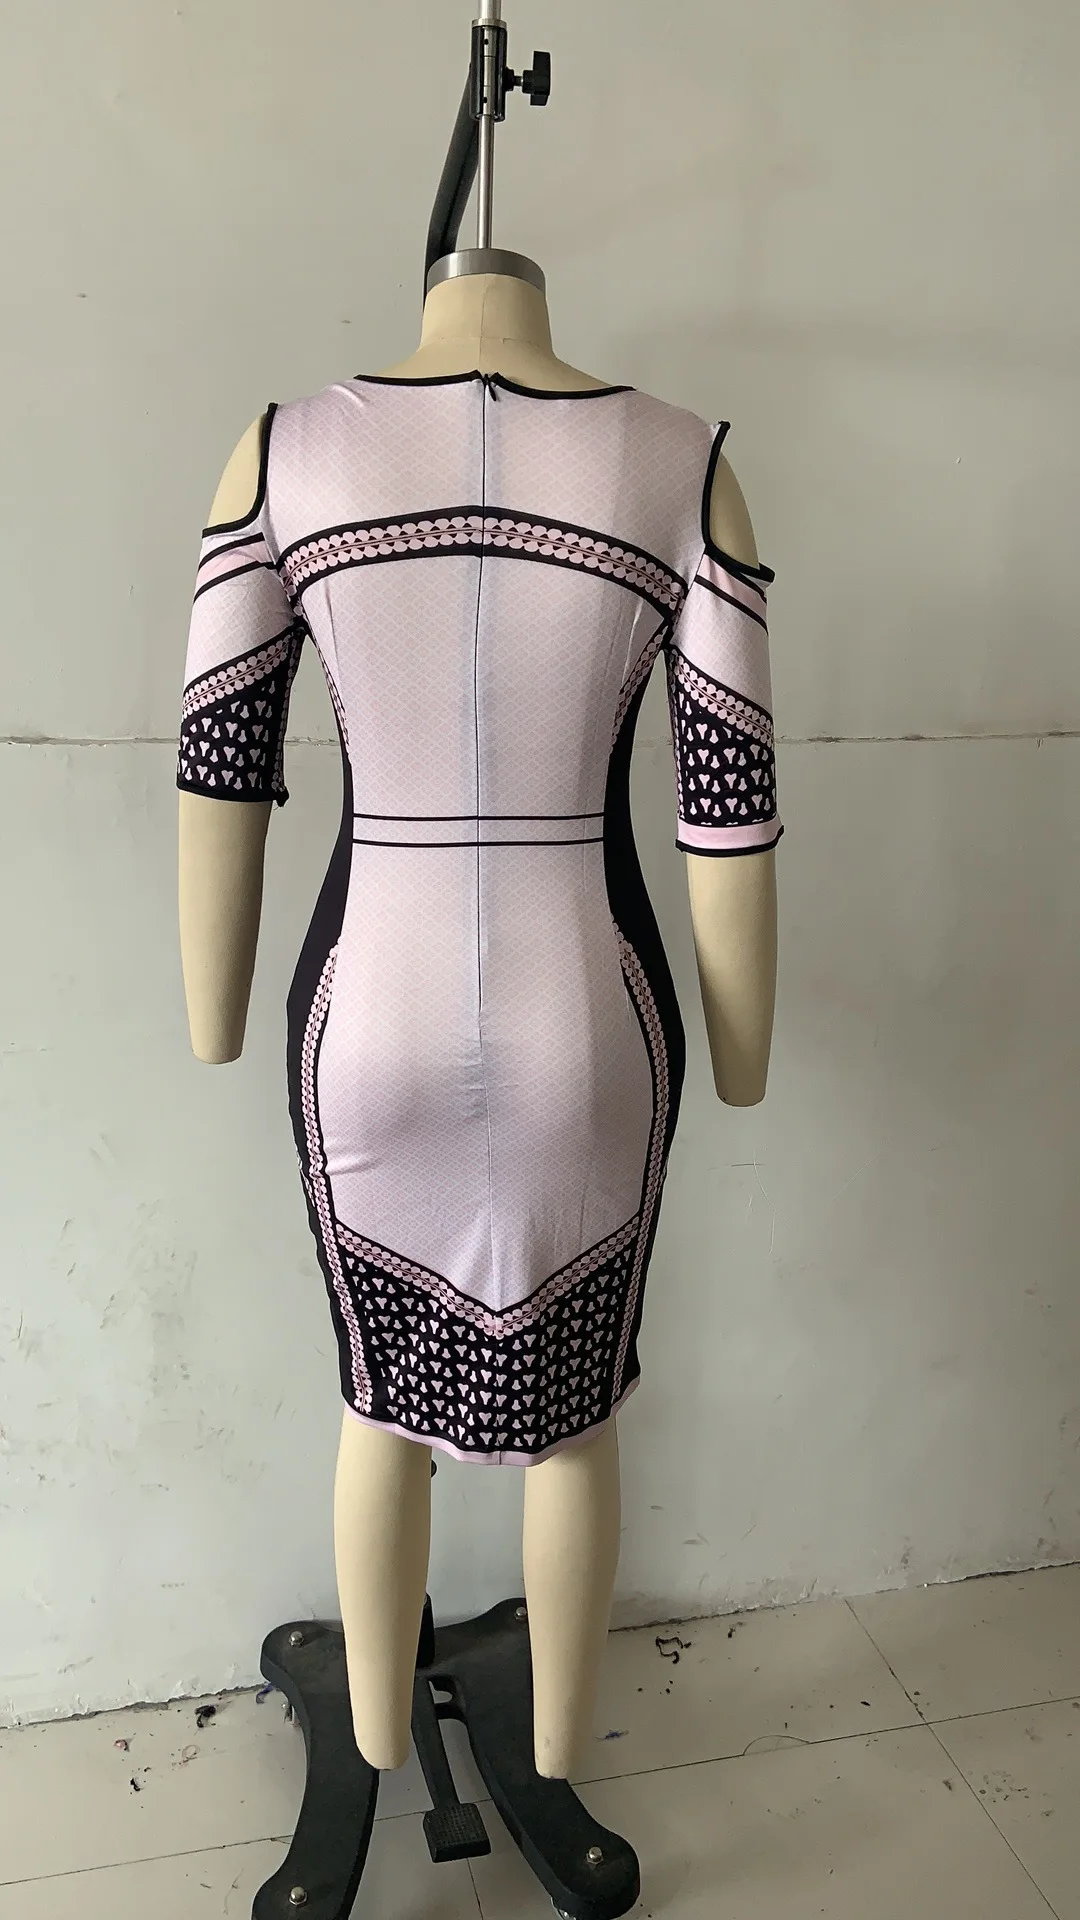 Новое летнее сексуальное модное Стильное женское платье с принтом размера плюс длиной до колена S-5XL